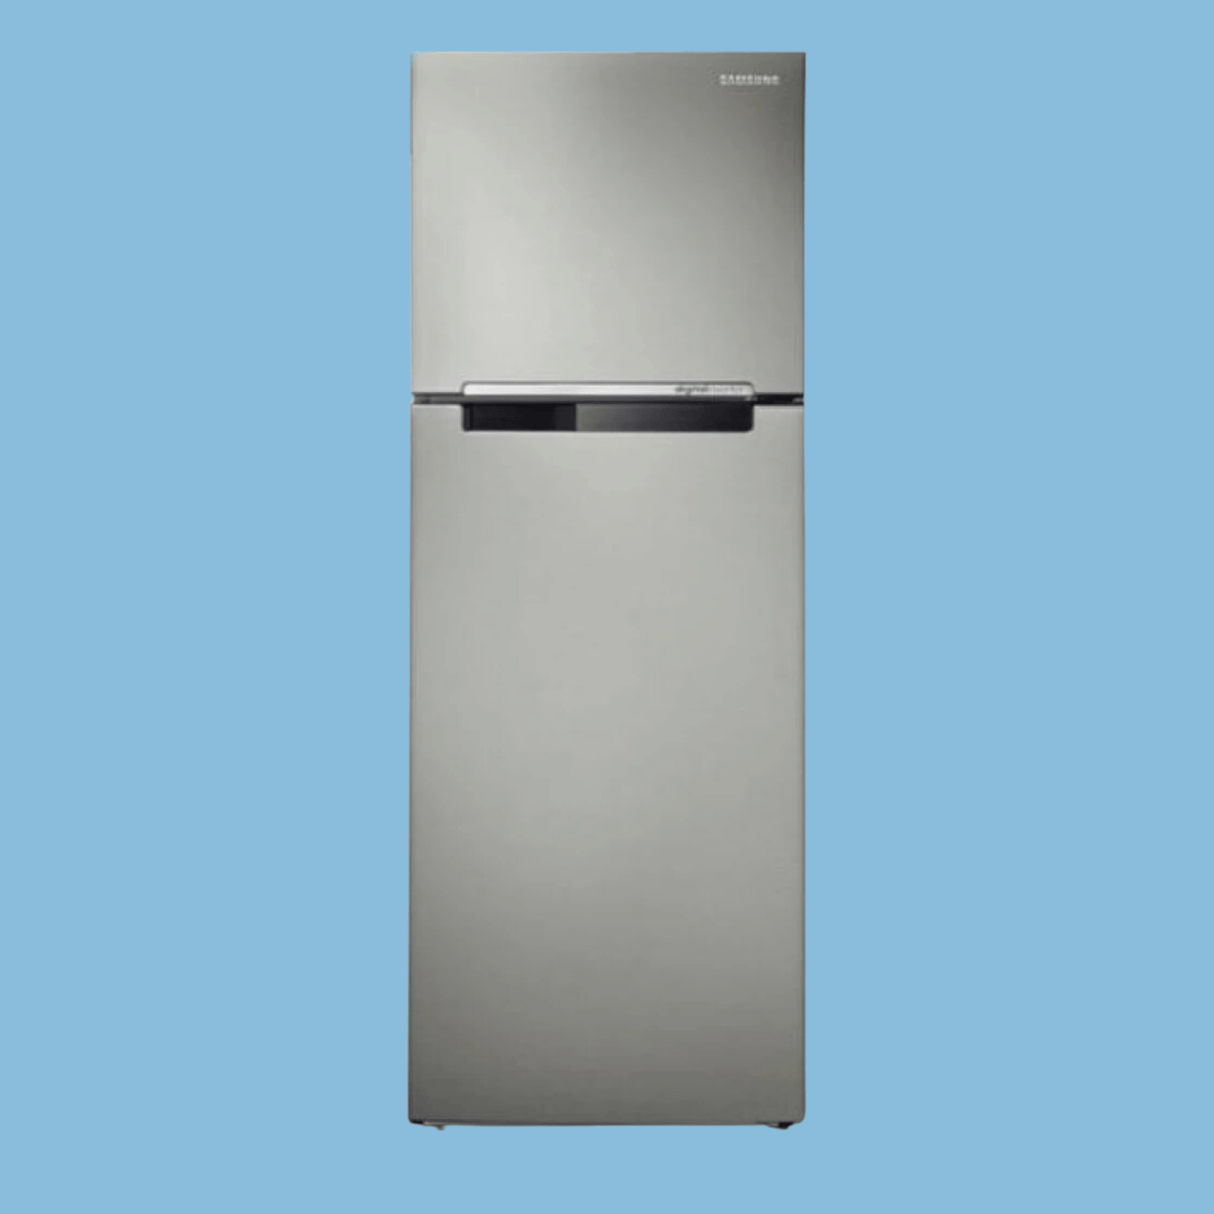 Samsung 440L 2 Door Top Freezer Fridge w/ Twin Cooling | RT44K5052SL - Inox